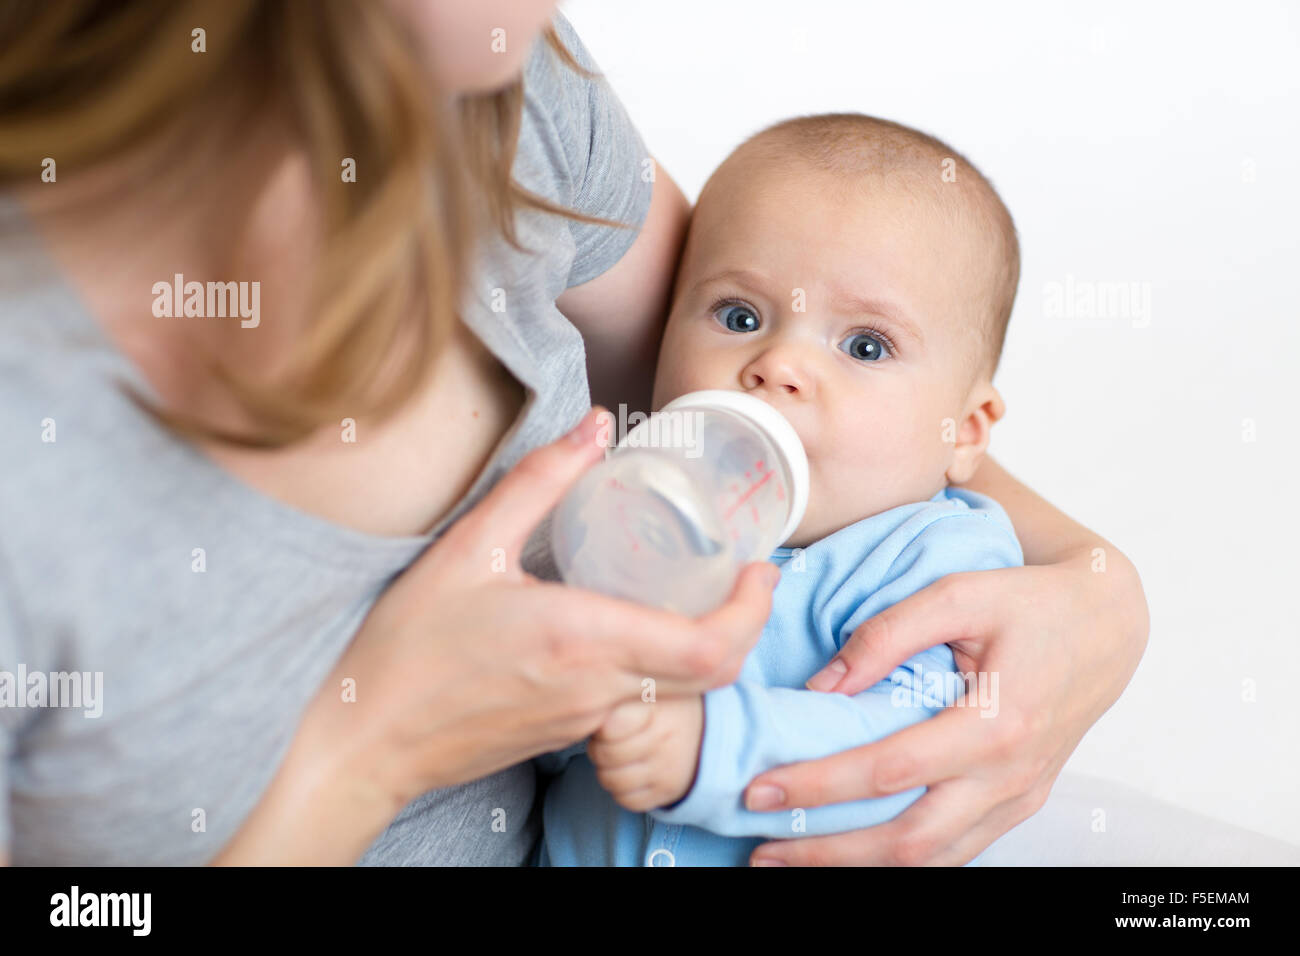 Новорожденный ребенок можно давать воду